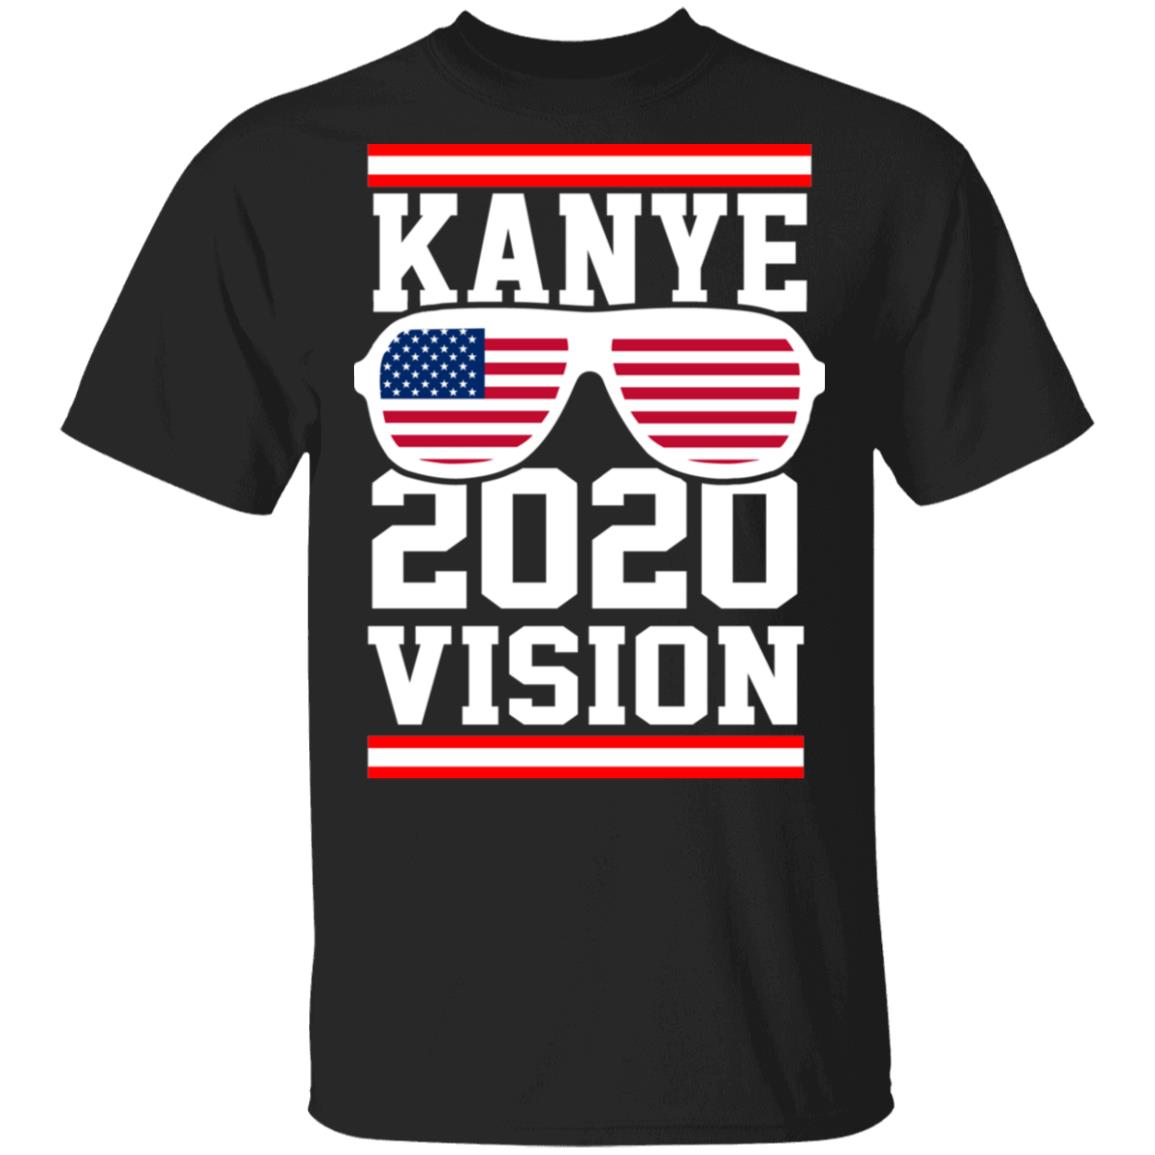 kanye 2020 vision